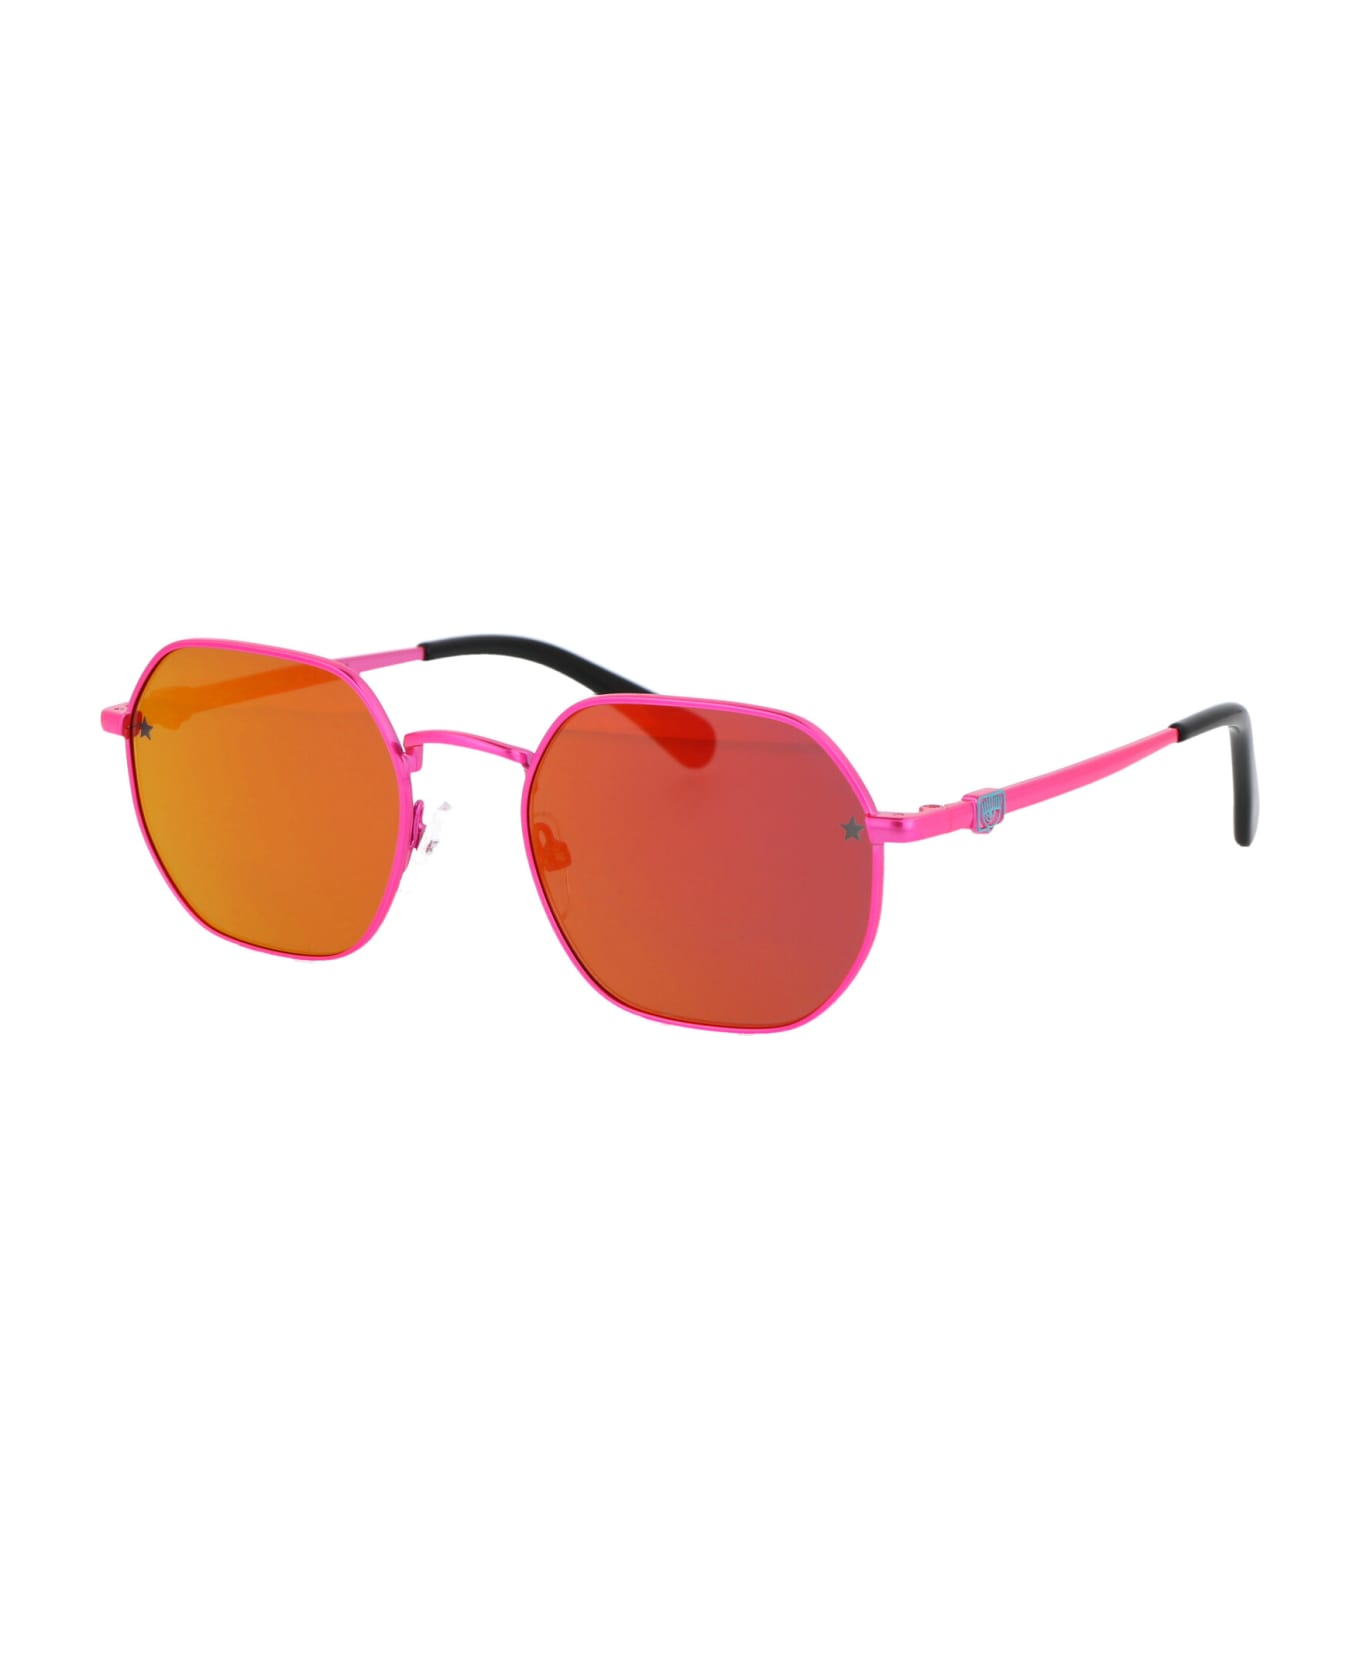 Chiara Ferragni Cf 1019/s Sunglasses - 35JVQ PINK